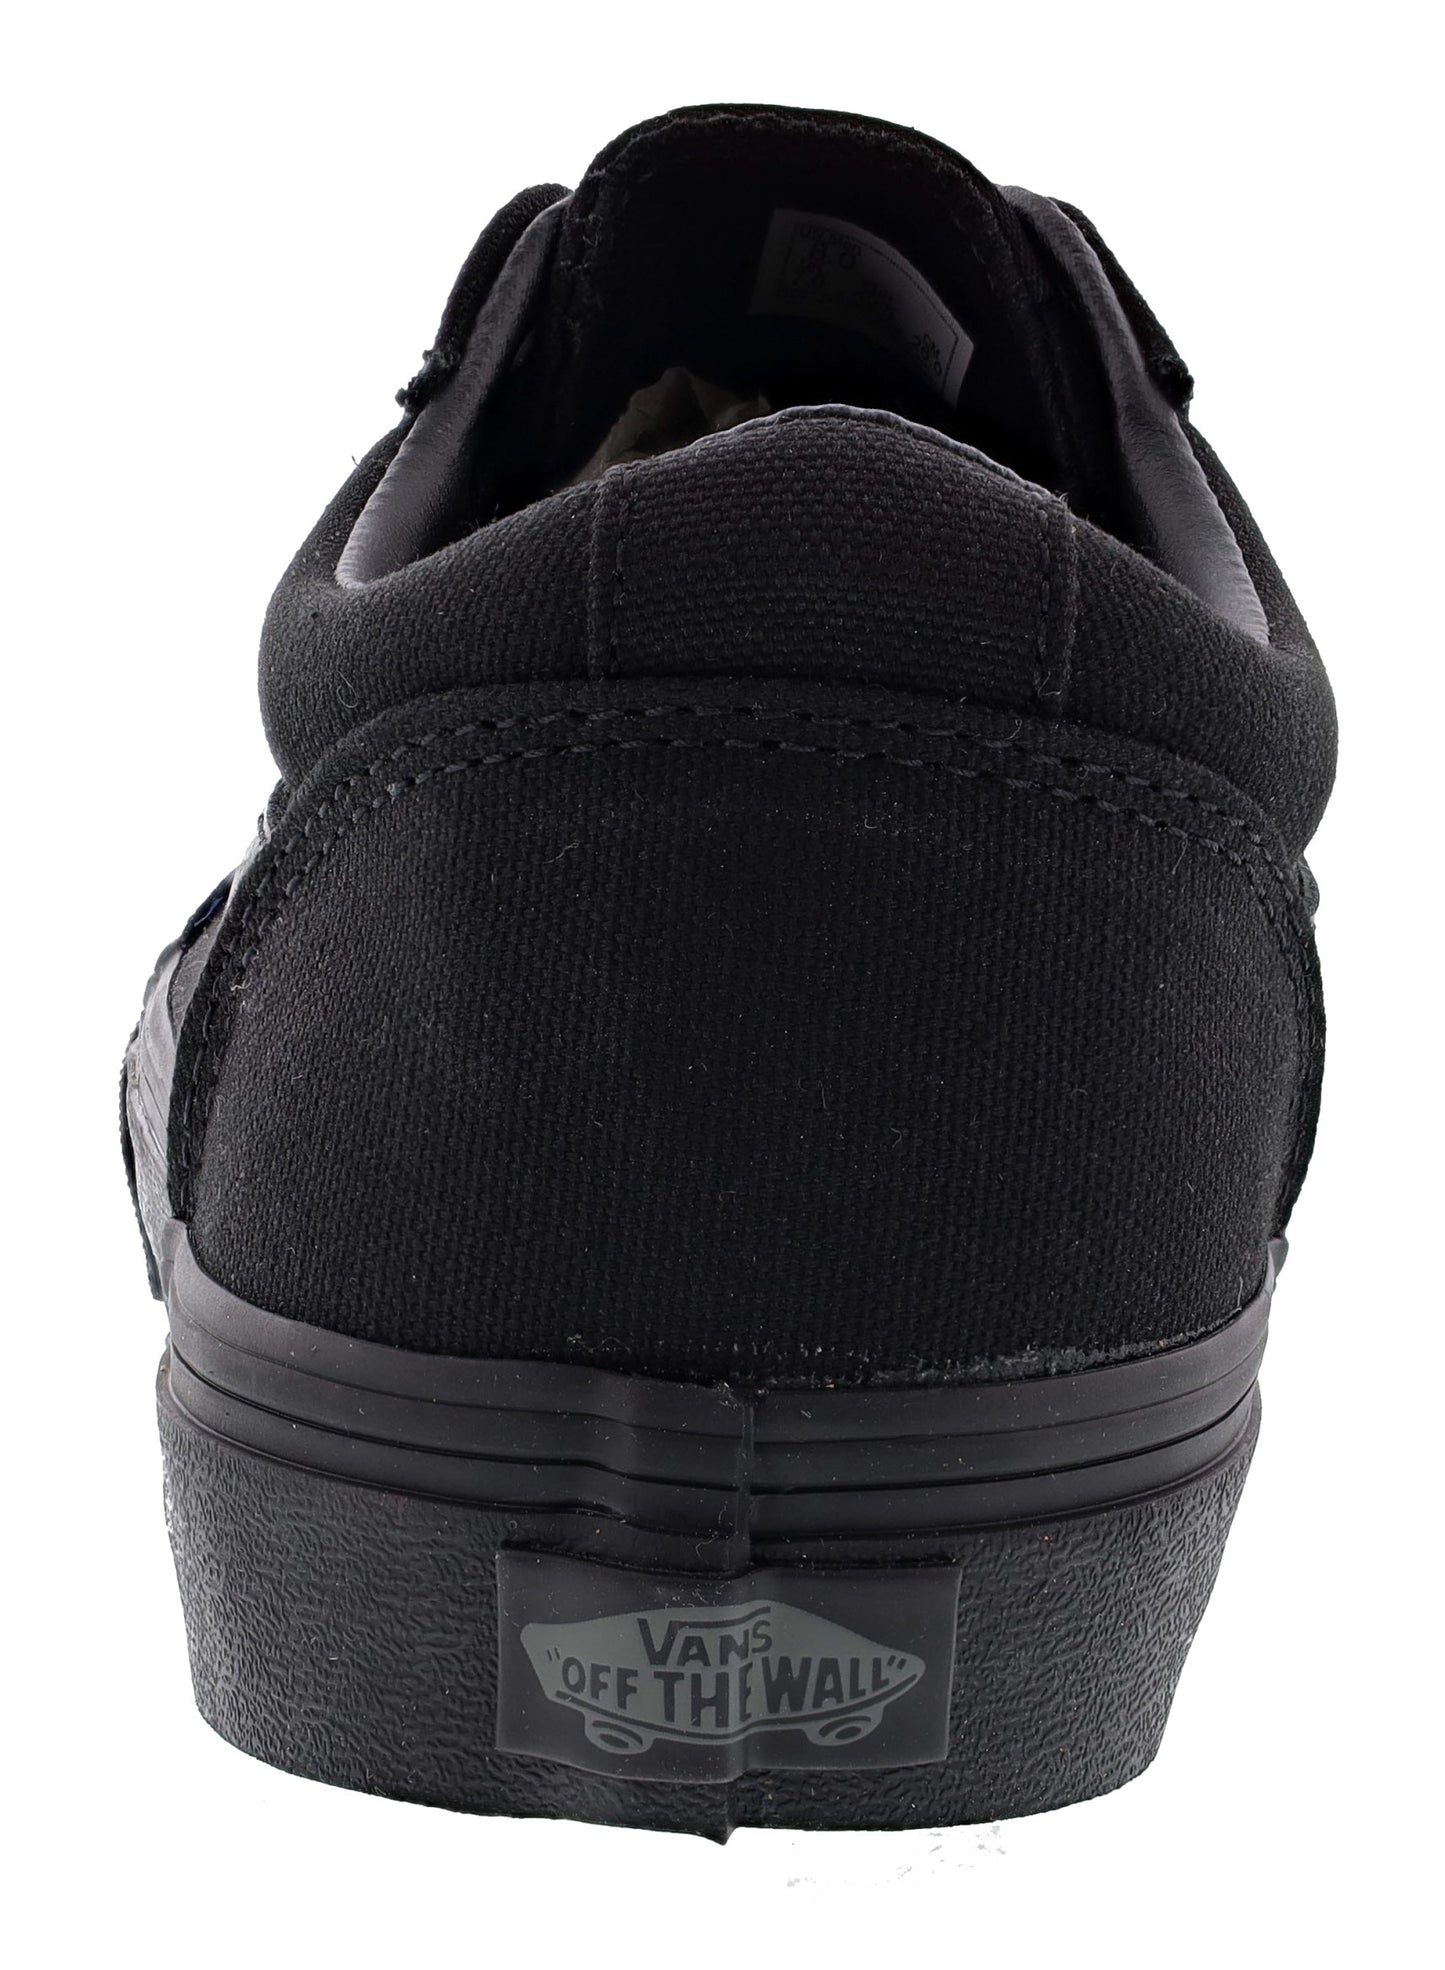 
                  
                    Van's Women's Ward Low Vulcanized Rubber Skate Shoes
                  
                